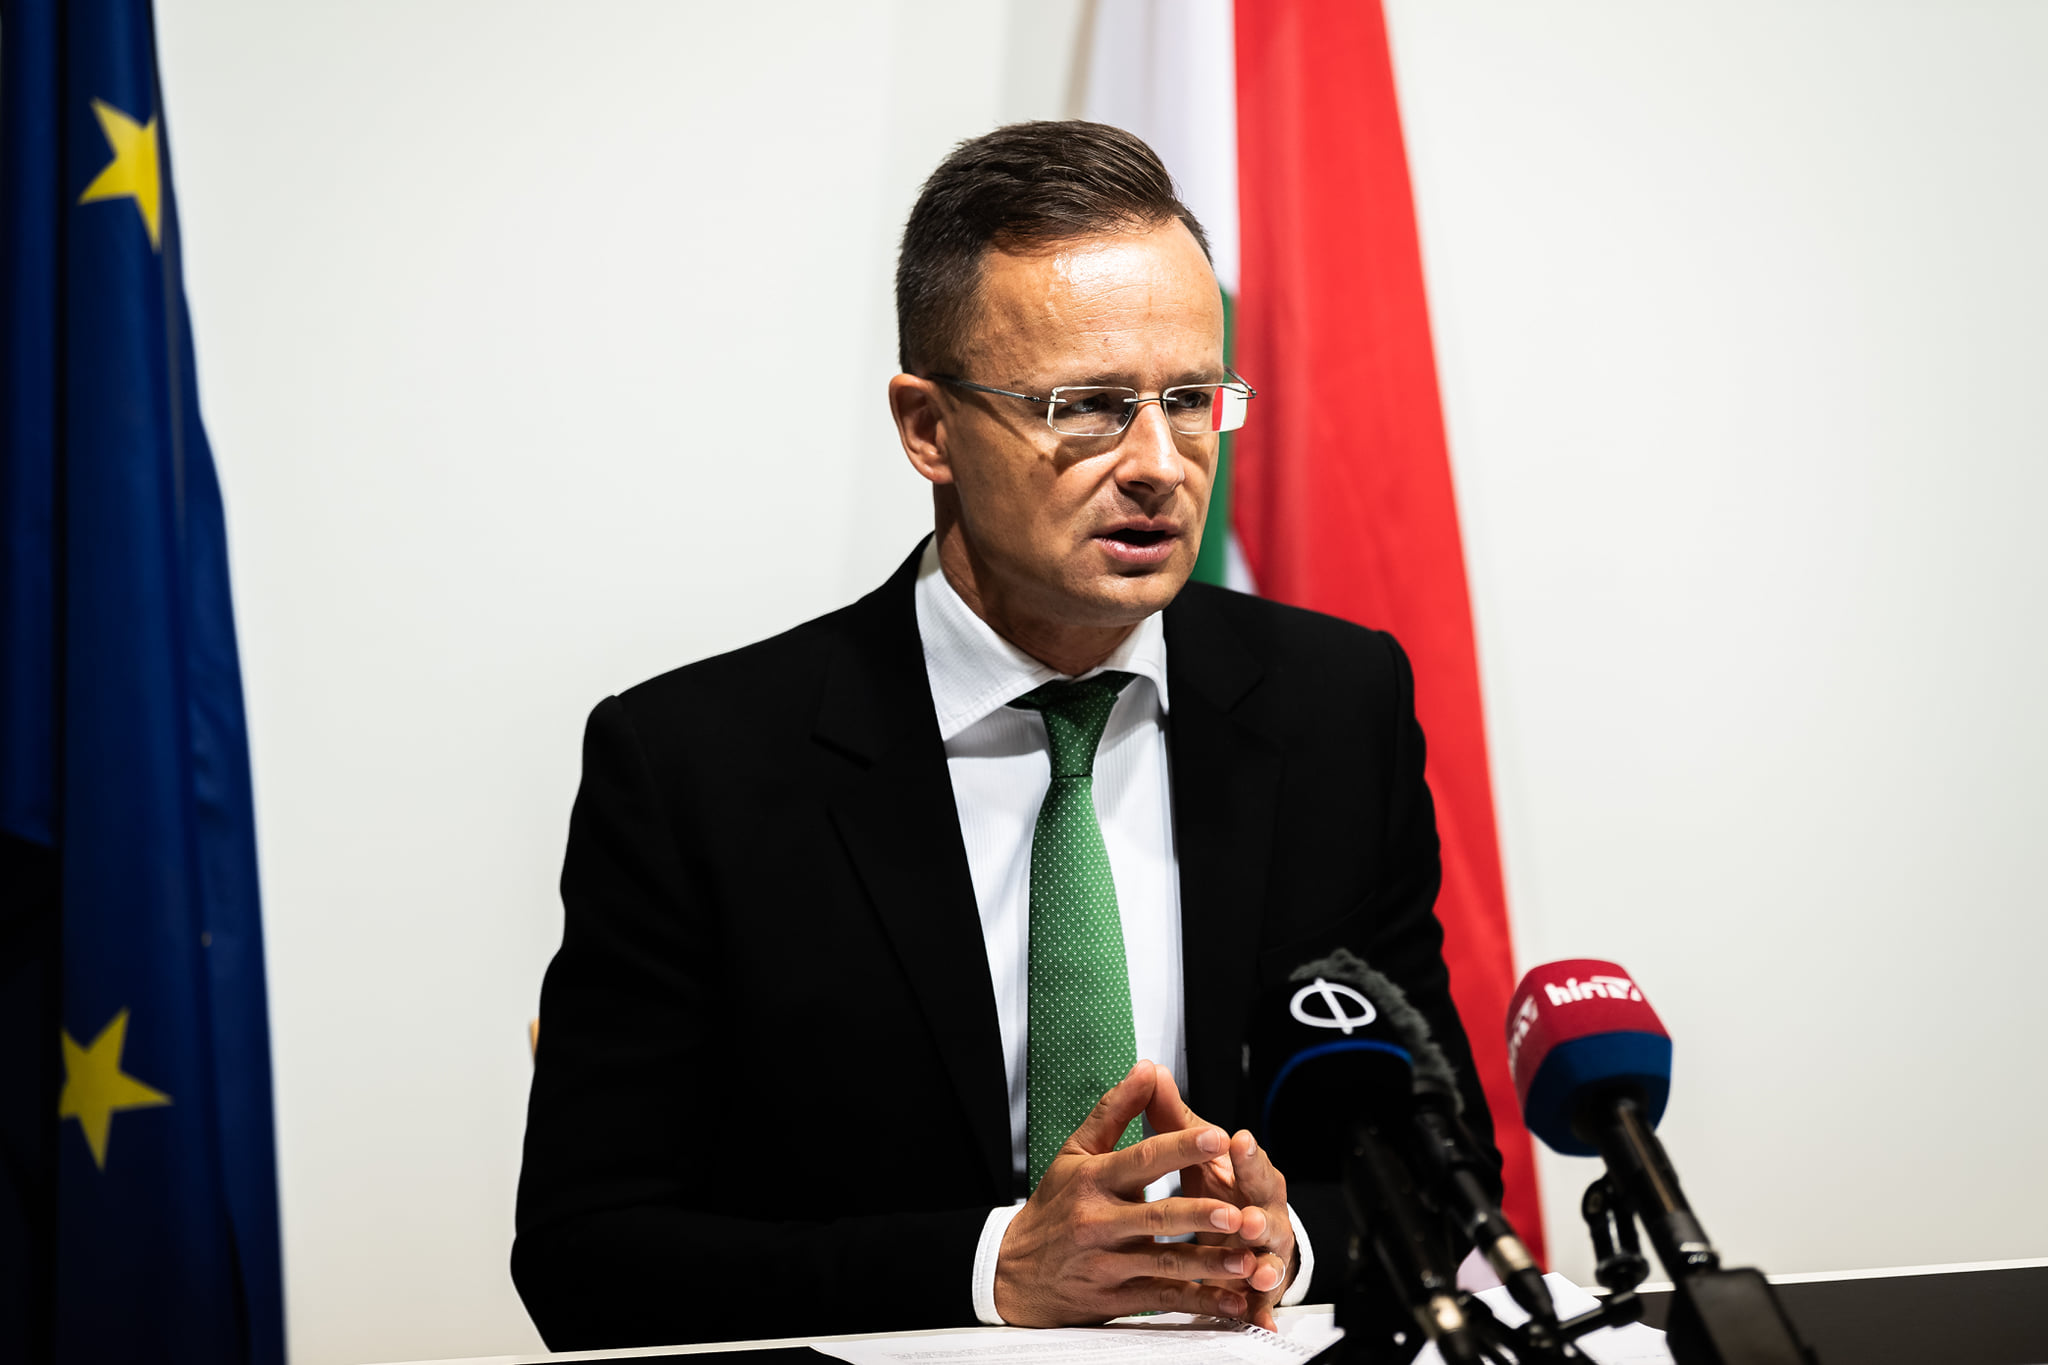 Péter Szijjártó Ministrul Afacerilor Externe